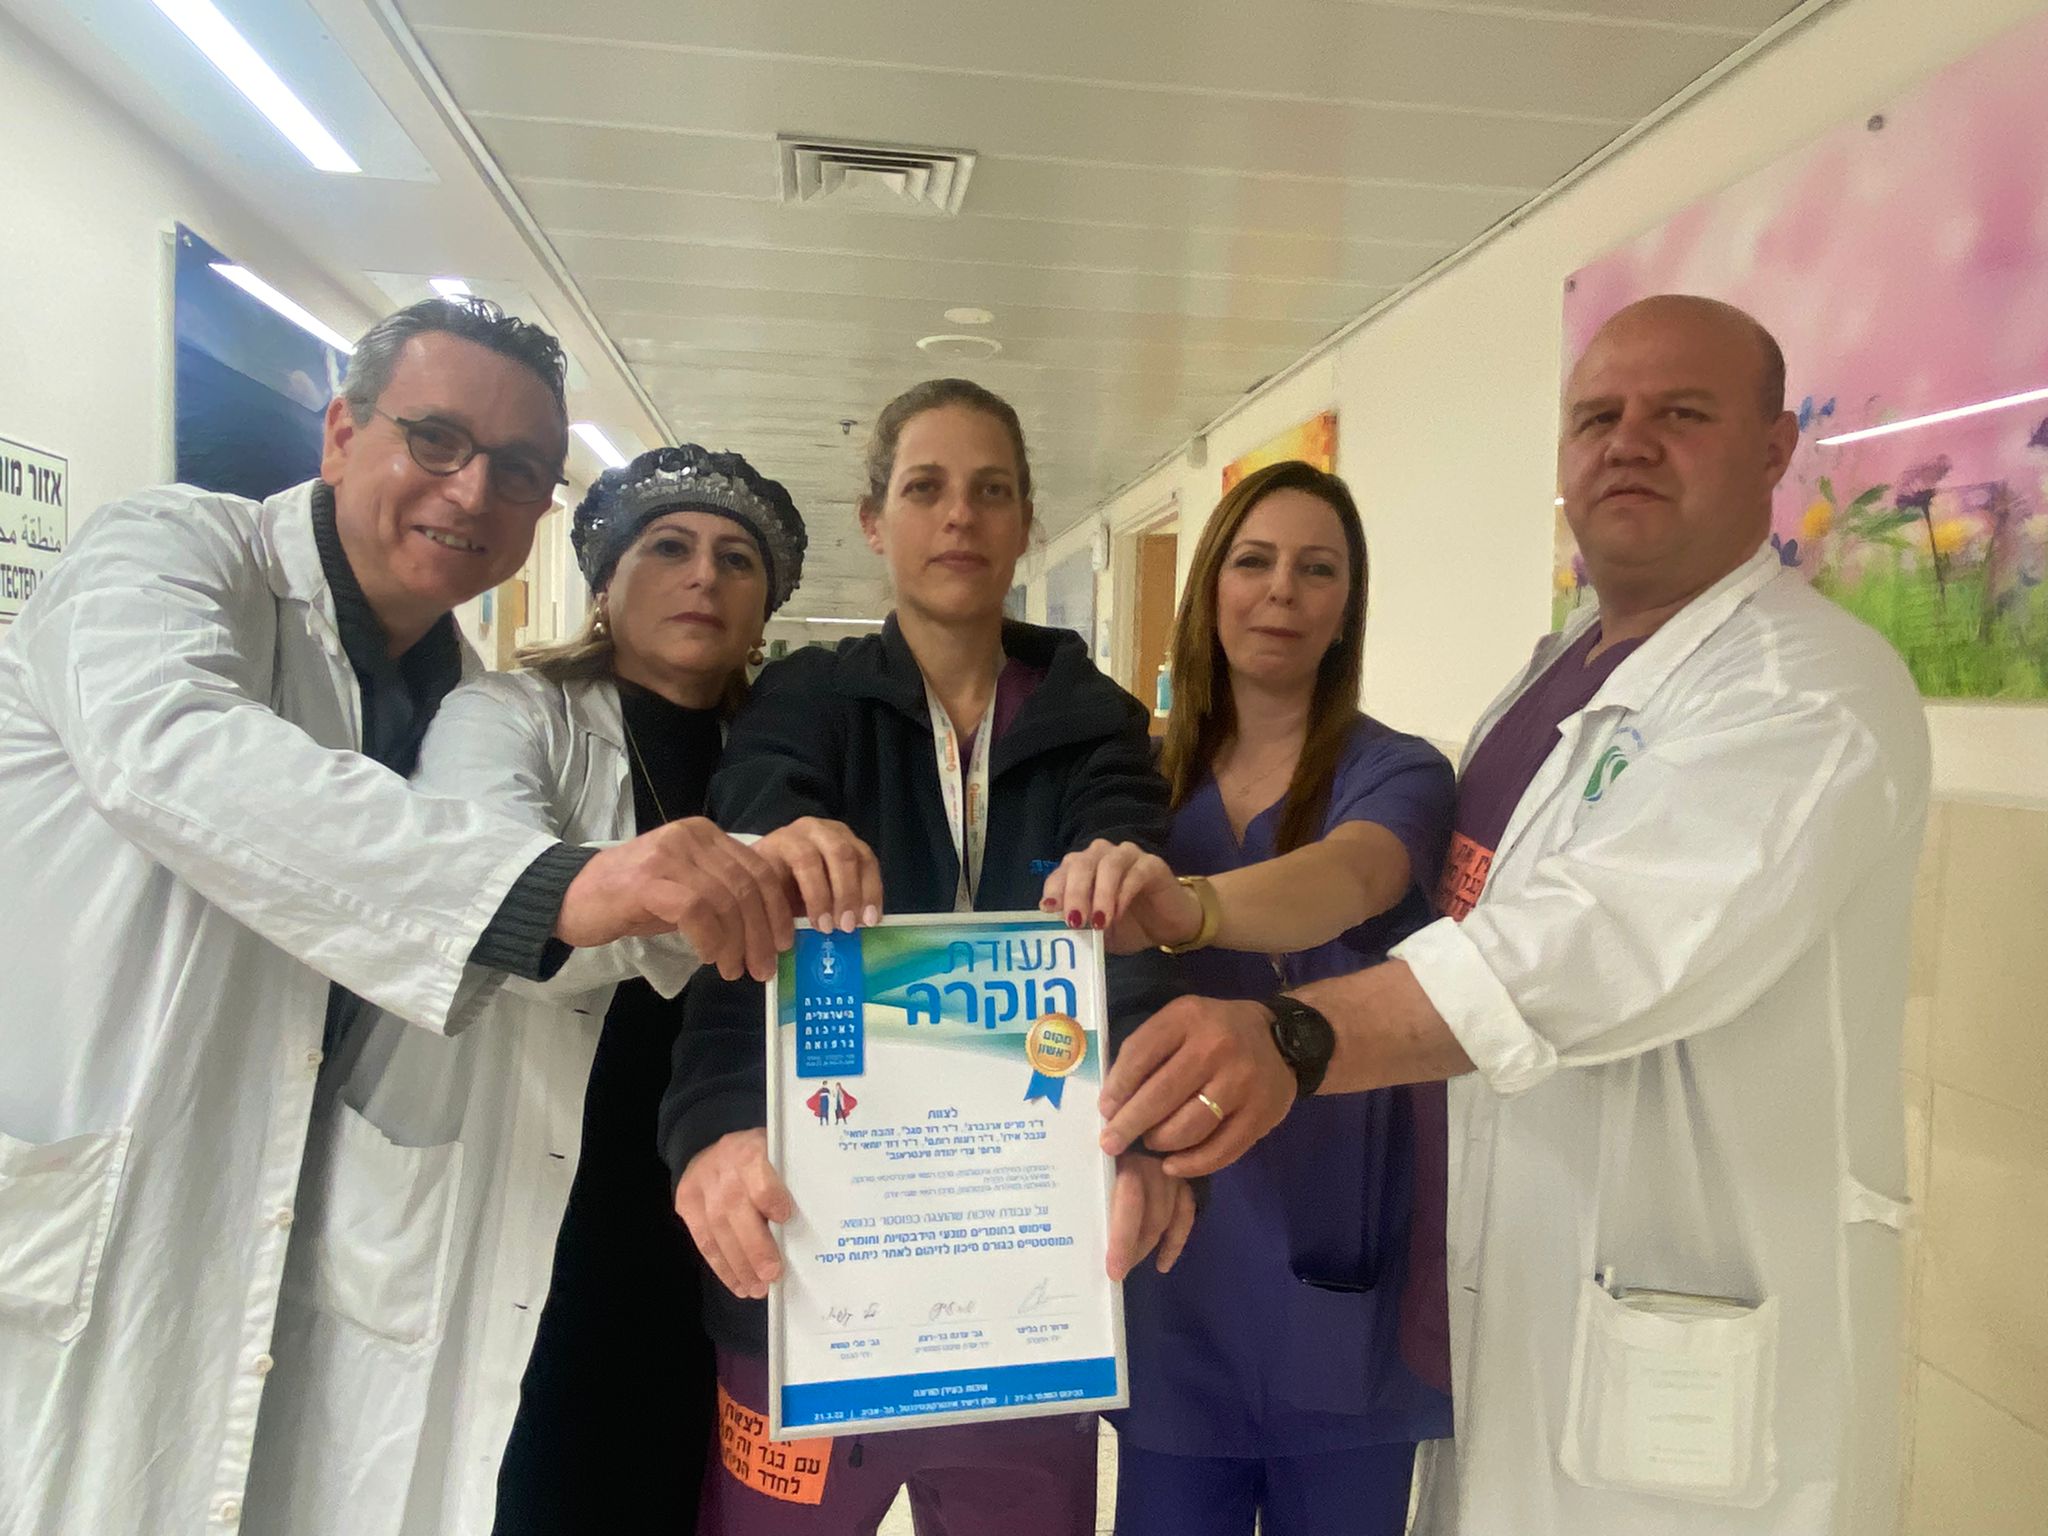 סורוקה מרכז רפואי אוניברסיטאי  זכה בשלושת המקומות הראשונים לפרוייקטים שהוצגו בכנס  החברה הישראלית לאיכות ברפואה